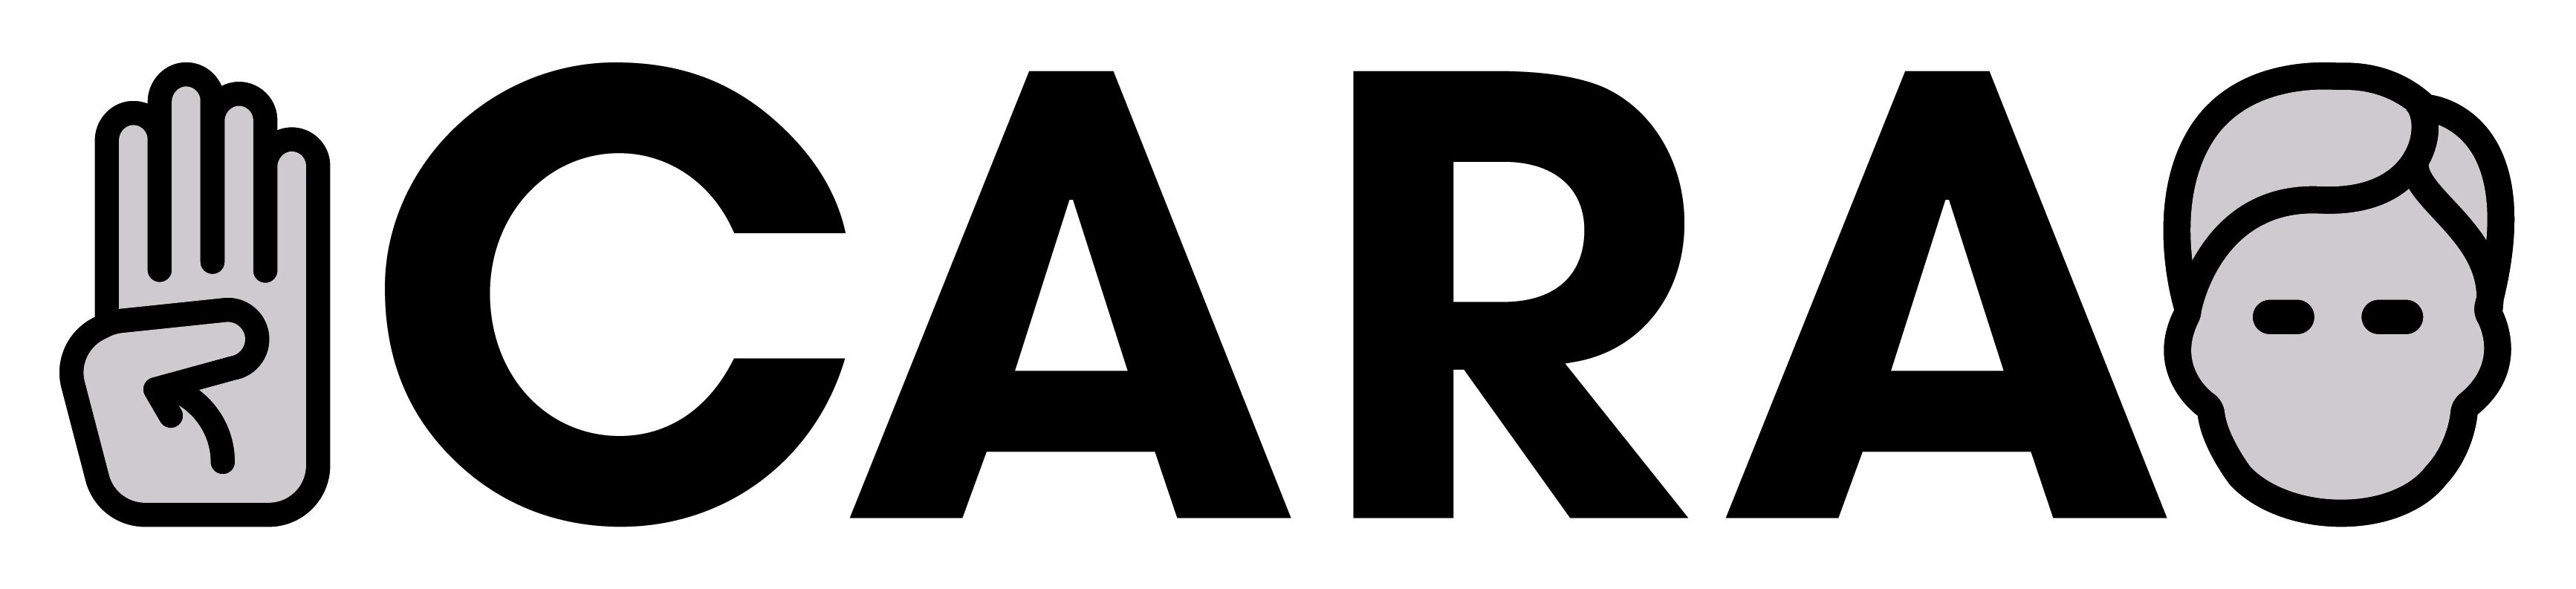 Trademark Logo CARA